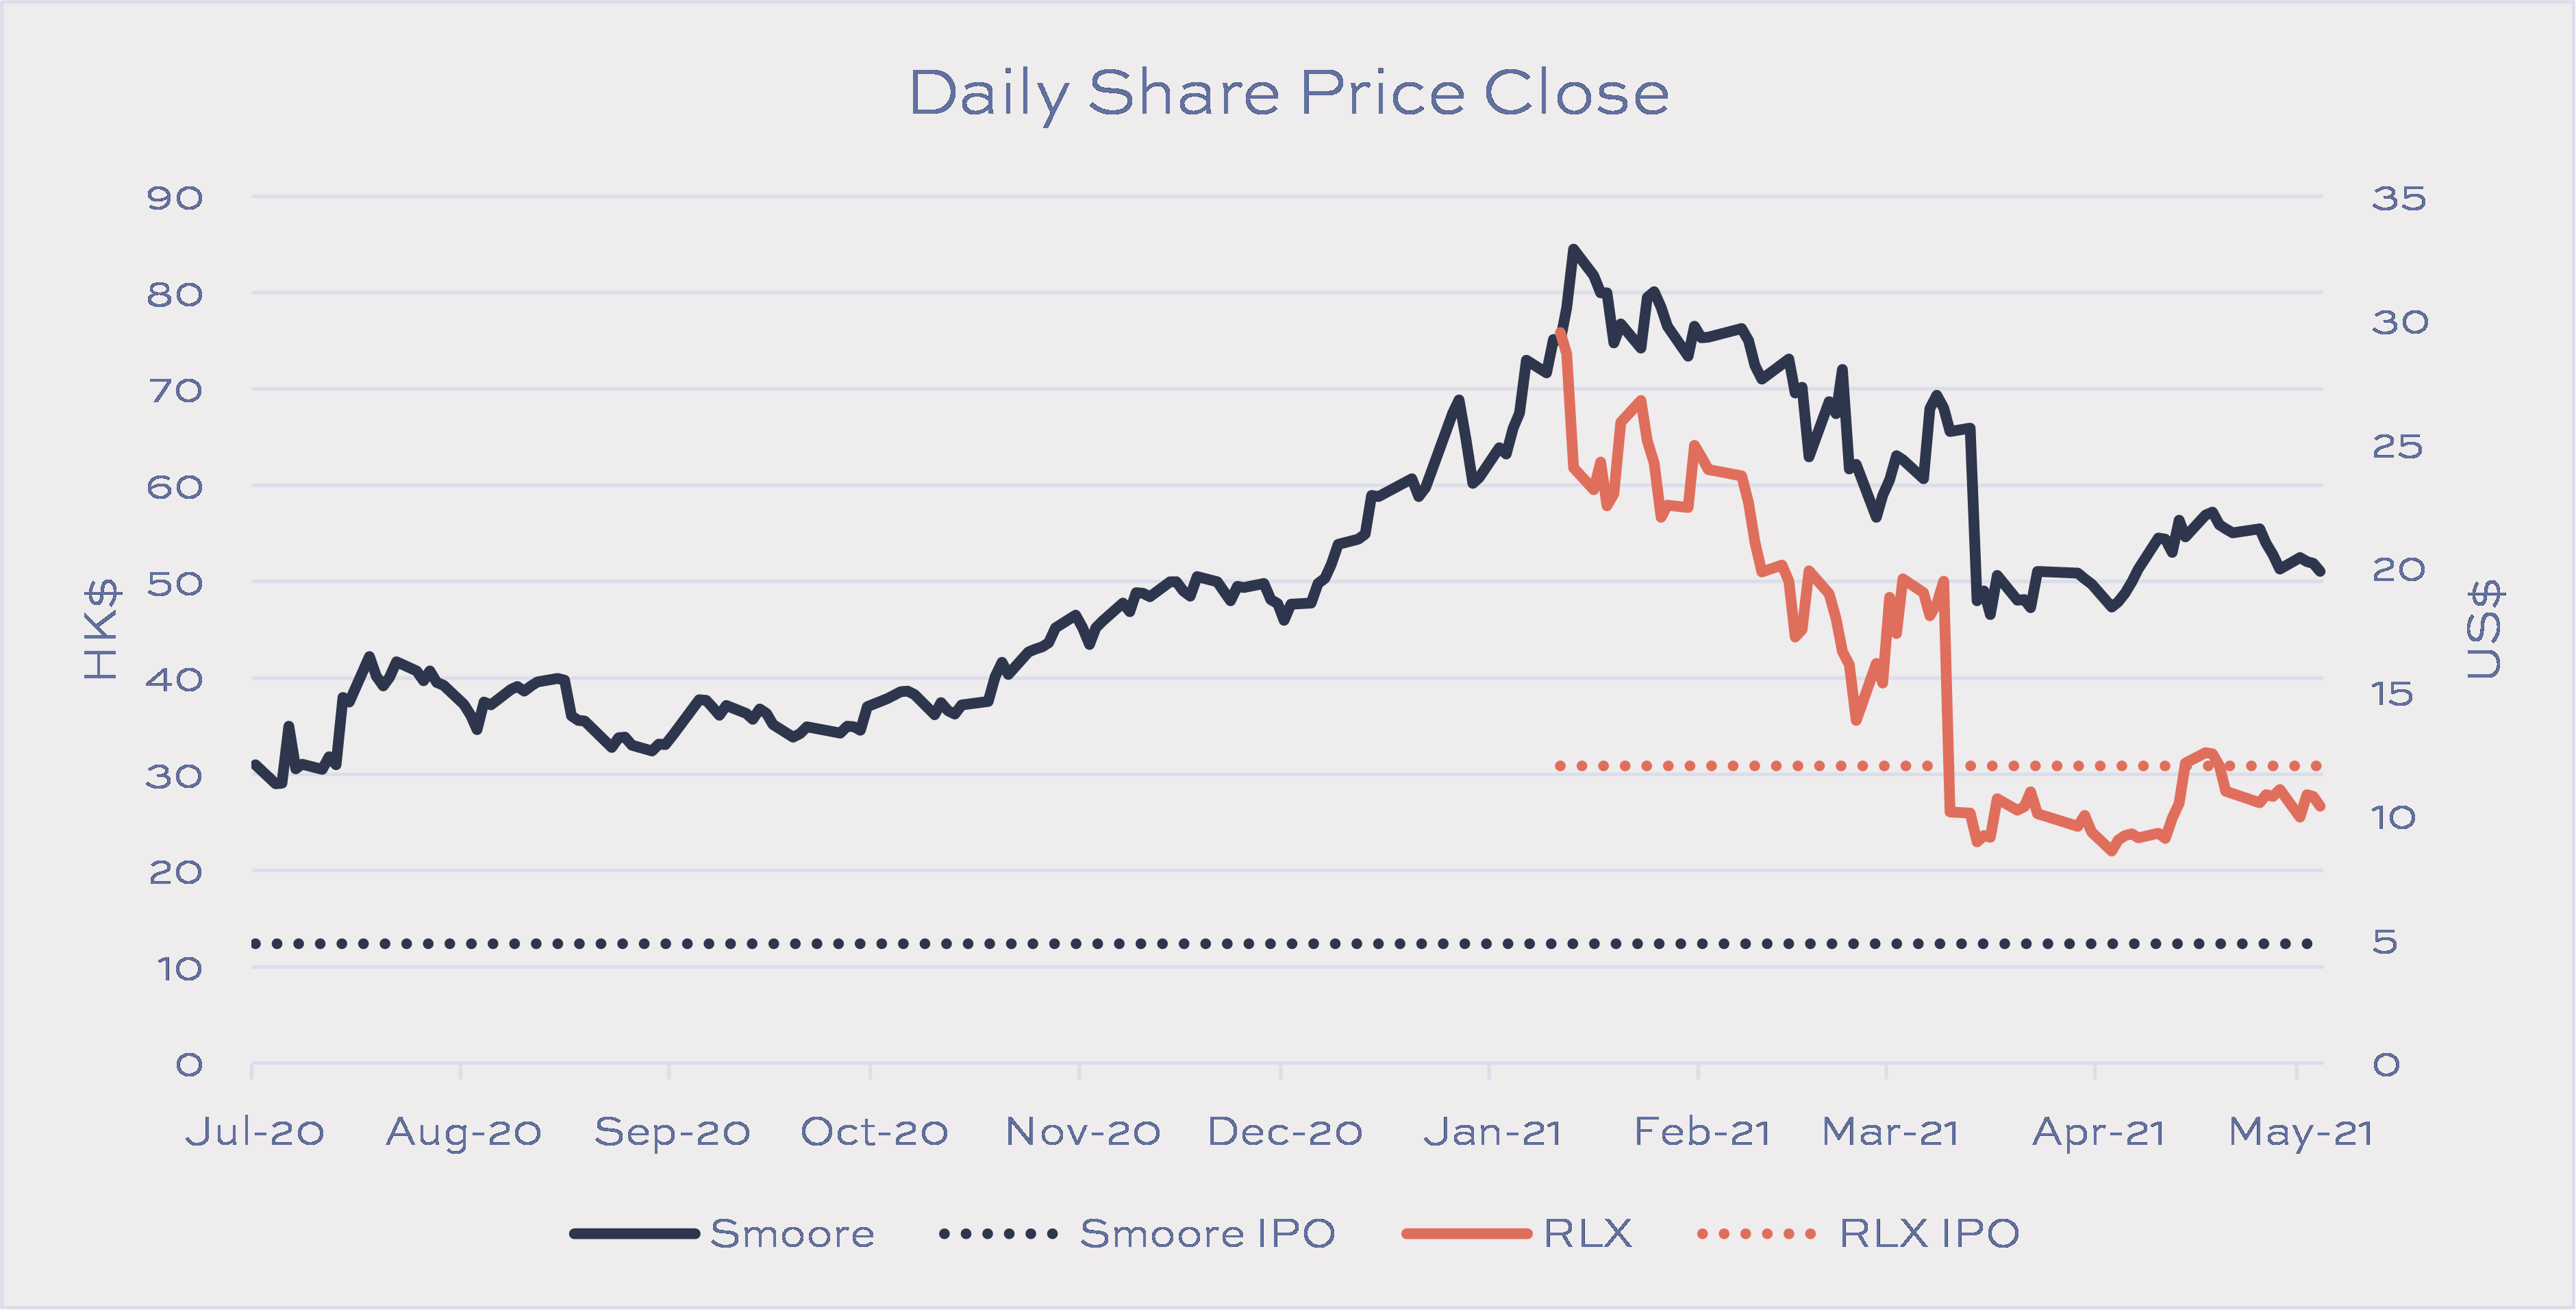 Rlx share price